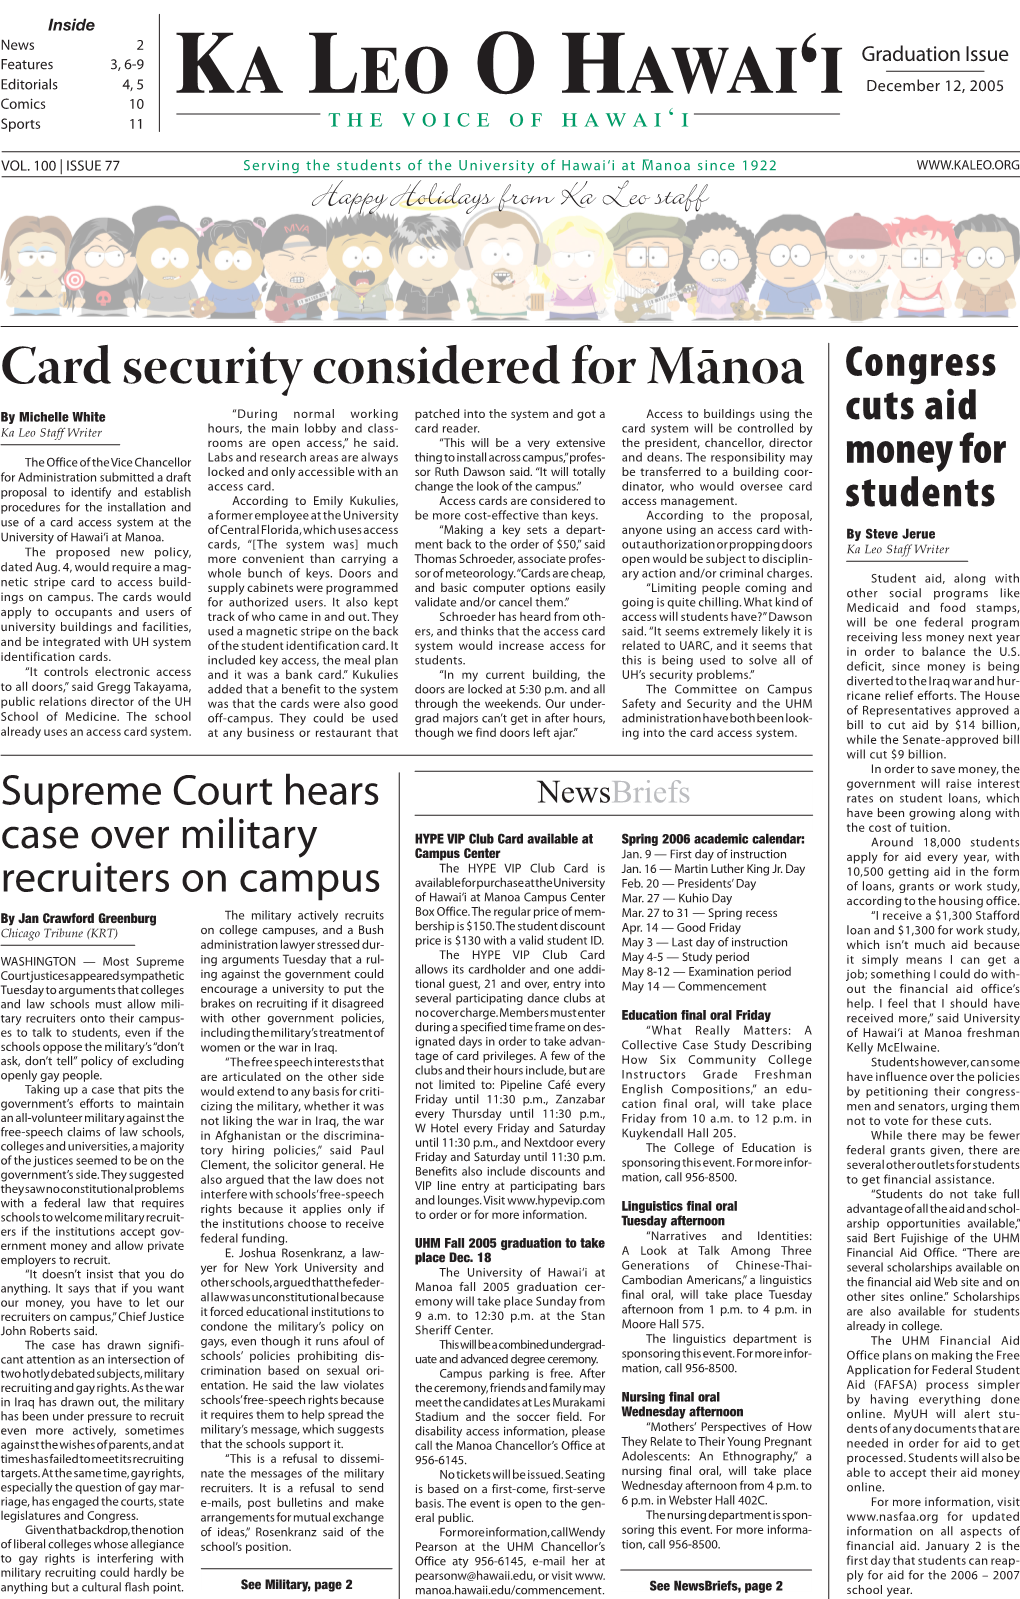 Card Security Considered for Mānoa